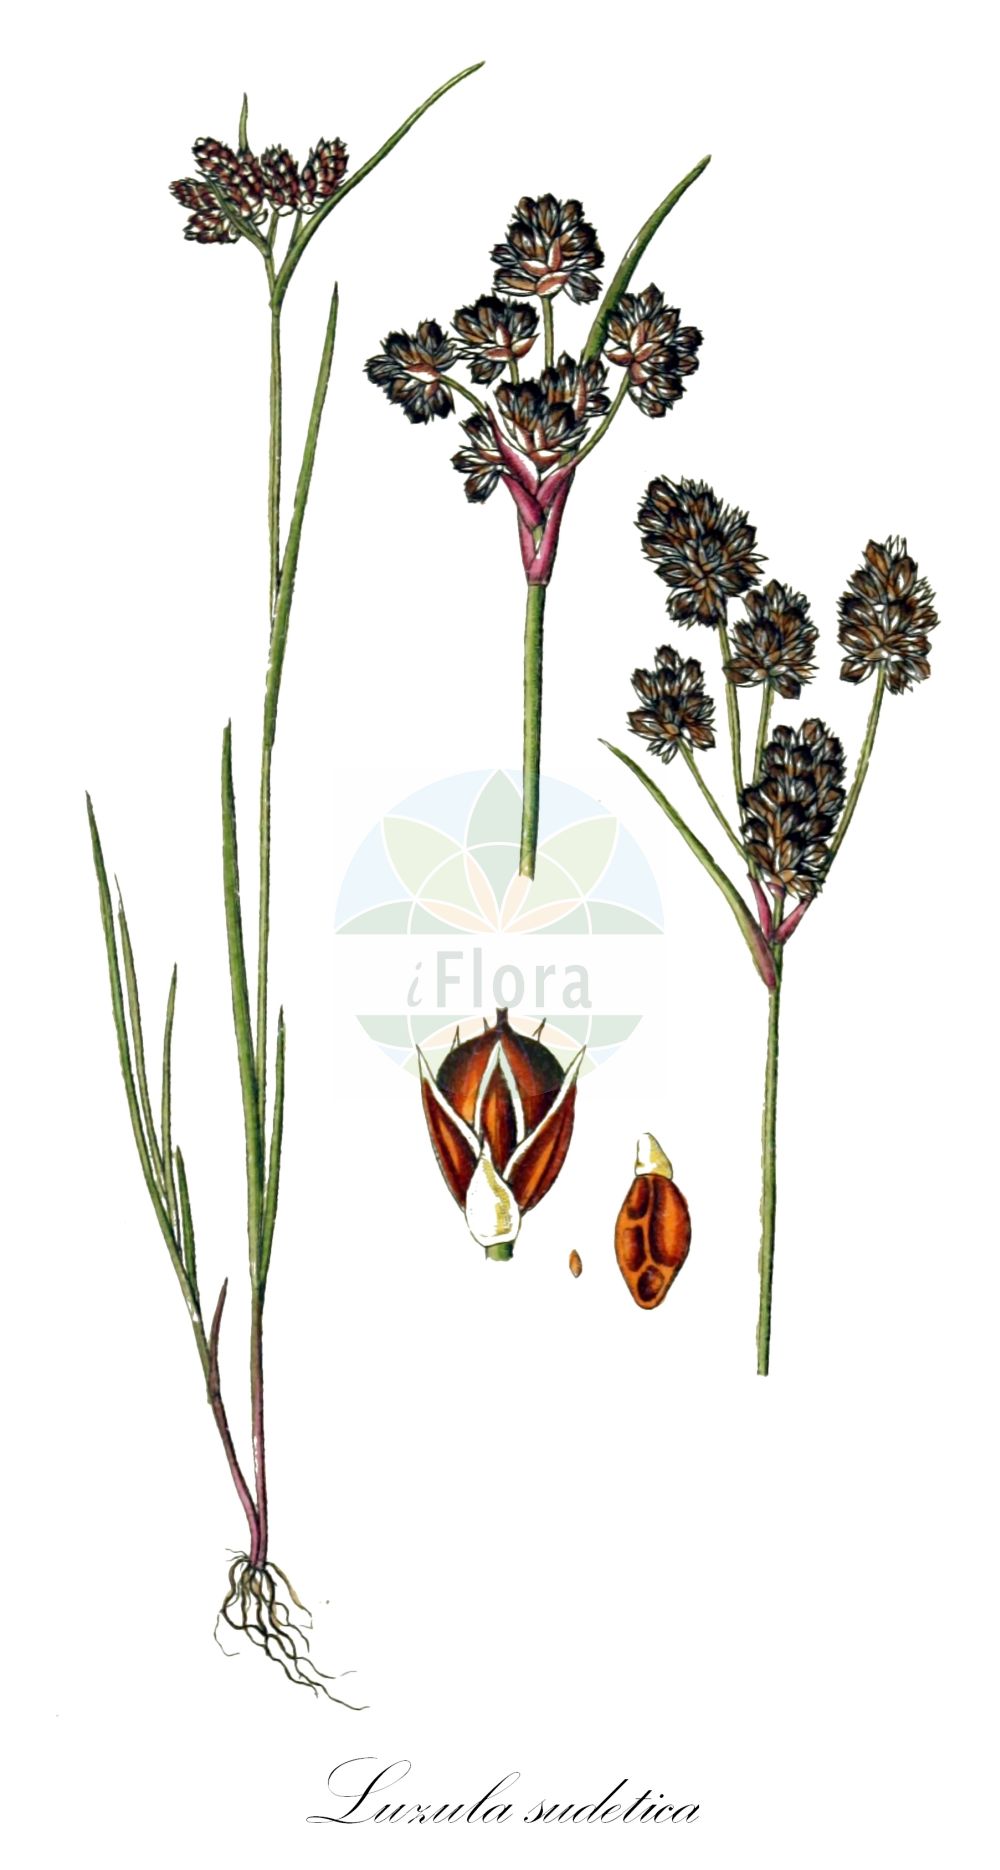 Historische Abbildung von Luzula sudetica (Sudeten-Hainsimse - Sudetic Wood-rush). Das Bild zeigt Blatt, Bluete, Frucht und Same. ---- Historical Drawing of Luzula sudetica (Sudeten-Hainsimse - Sudetic Wood-rush). The image is showing leaf, flower, fruit and seed.(Luzula sudetica,Sudeten-Hainsimse,Sudetic Wood-rush,Gymnodes sudetica,Juncus sudeticus,Luciola sudetica,Luzula althii,Luzula nigricans,Luzula sudetica,Sudeten-Hainsimse,Sudetic Wood-rush,Luzula,Hainsimse,Wood-rush,Juncaceae,Binsengewächse,Rush family,Blatt,Bluete,Frucht,Same,leaf,flower,fruit,seed,Sturm (1796f))